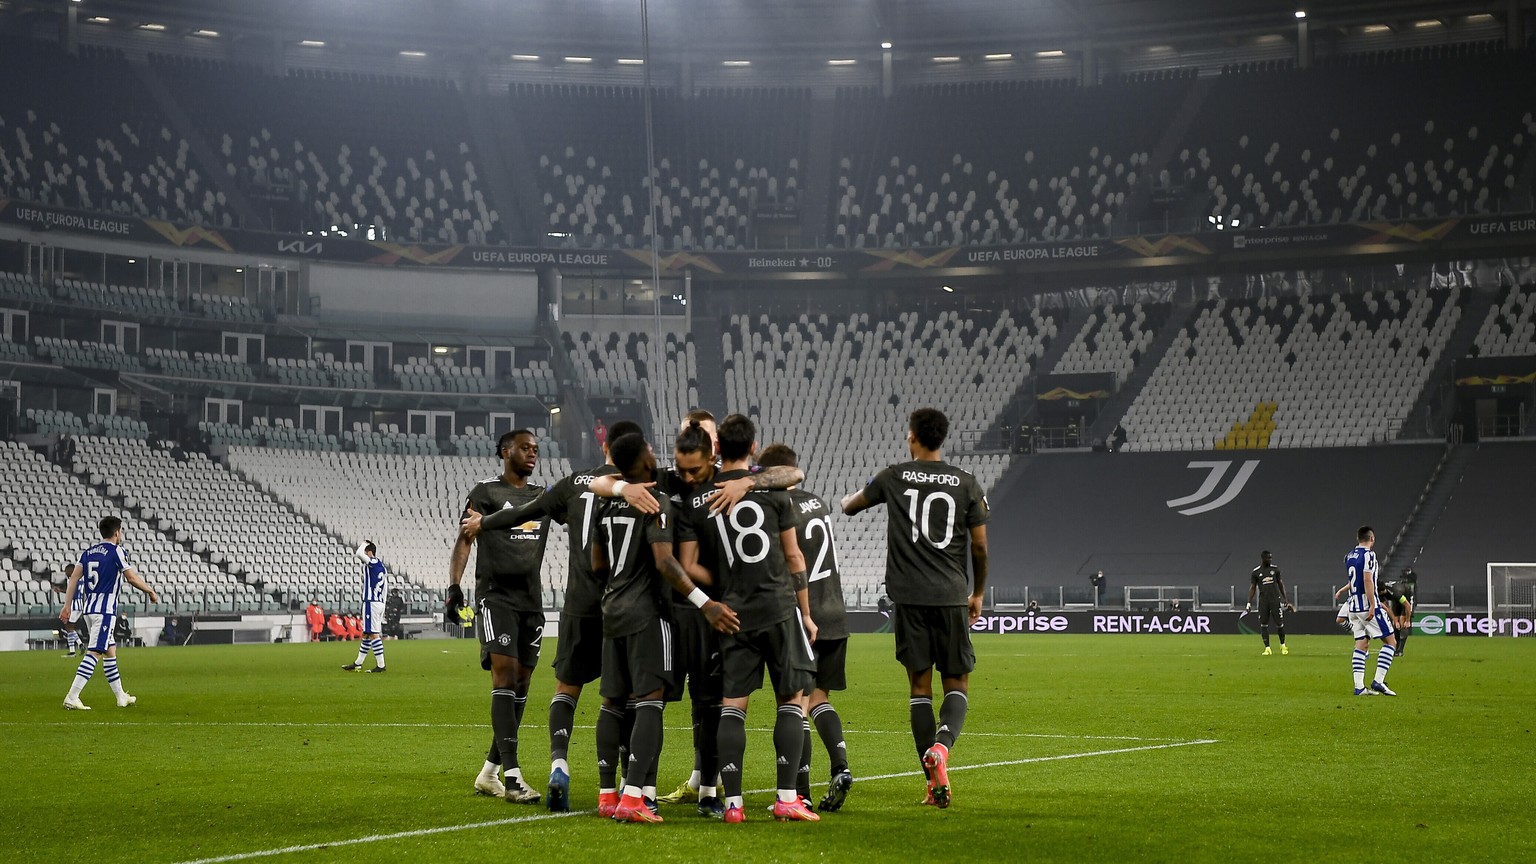 Spitzenfussball im Jahr 2021: Im menschenleeren Stadion in Turin gewinnt Manchester United ganz in schwarz 4:0 gegen Real Sociedad.